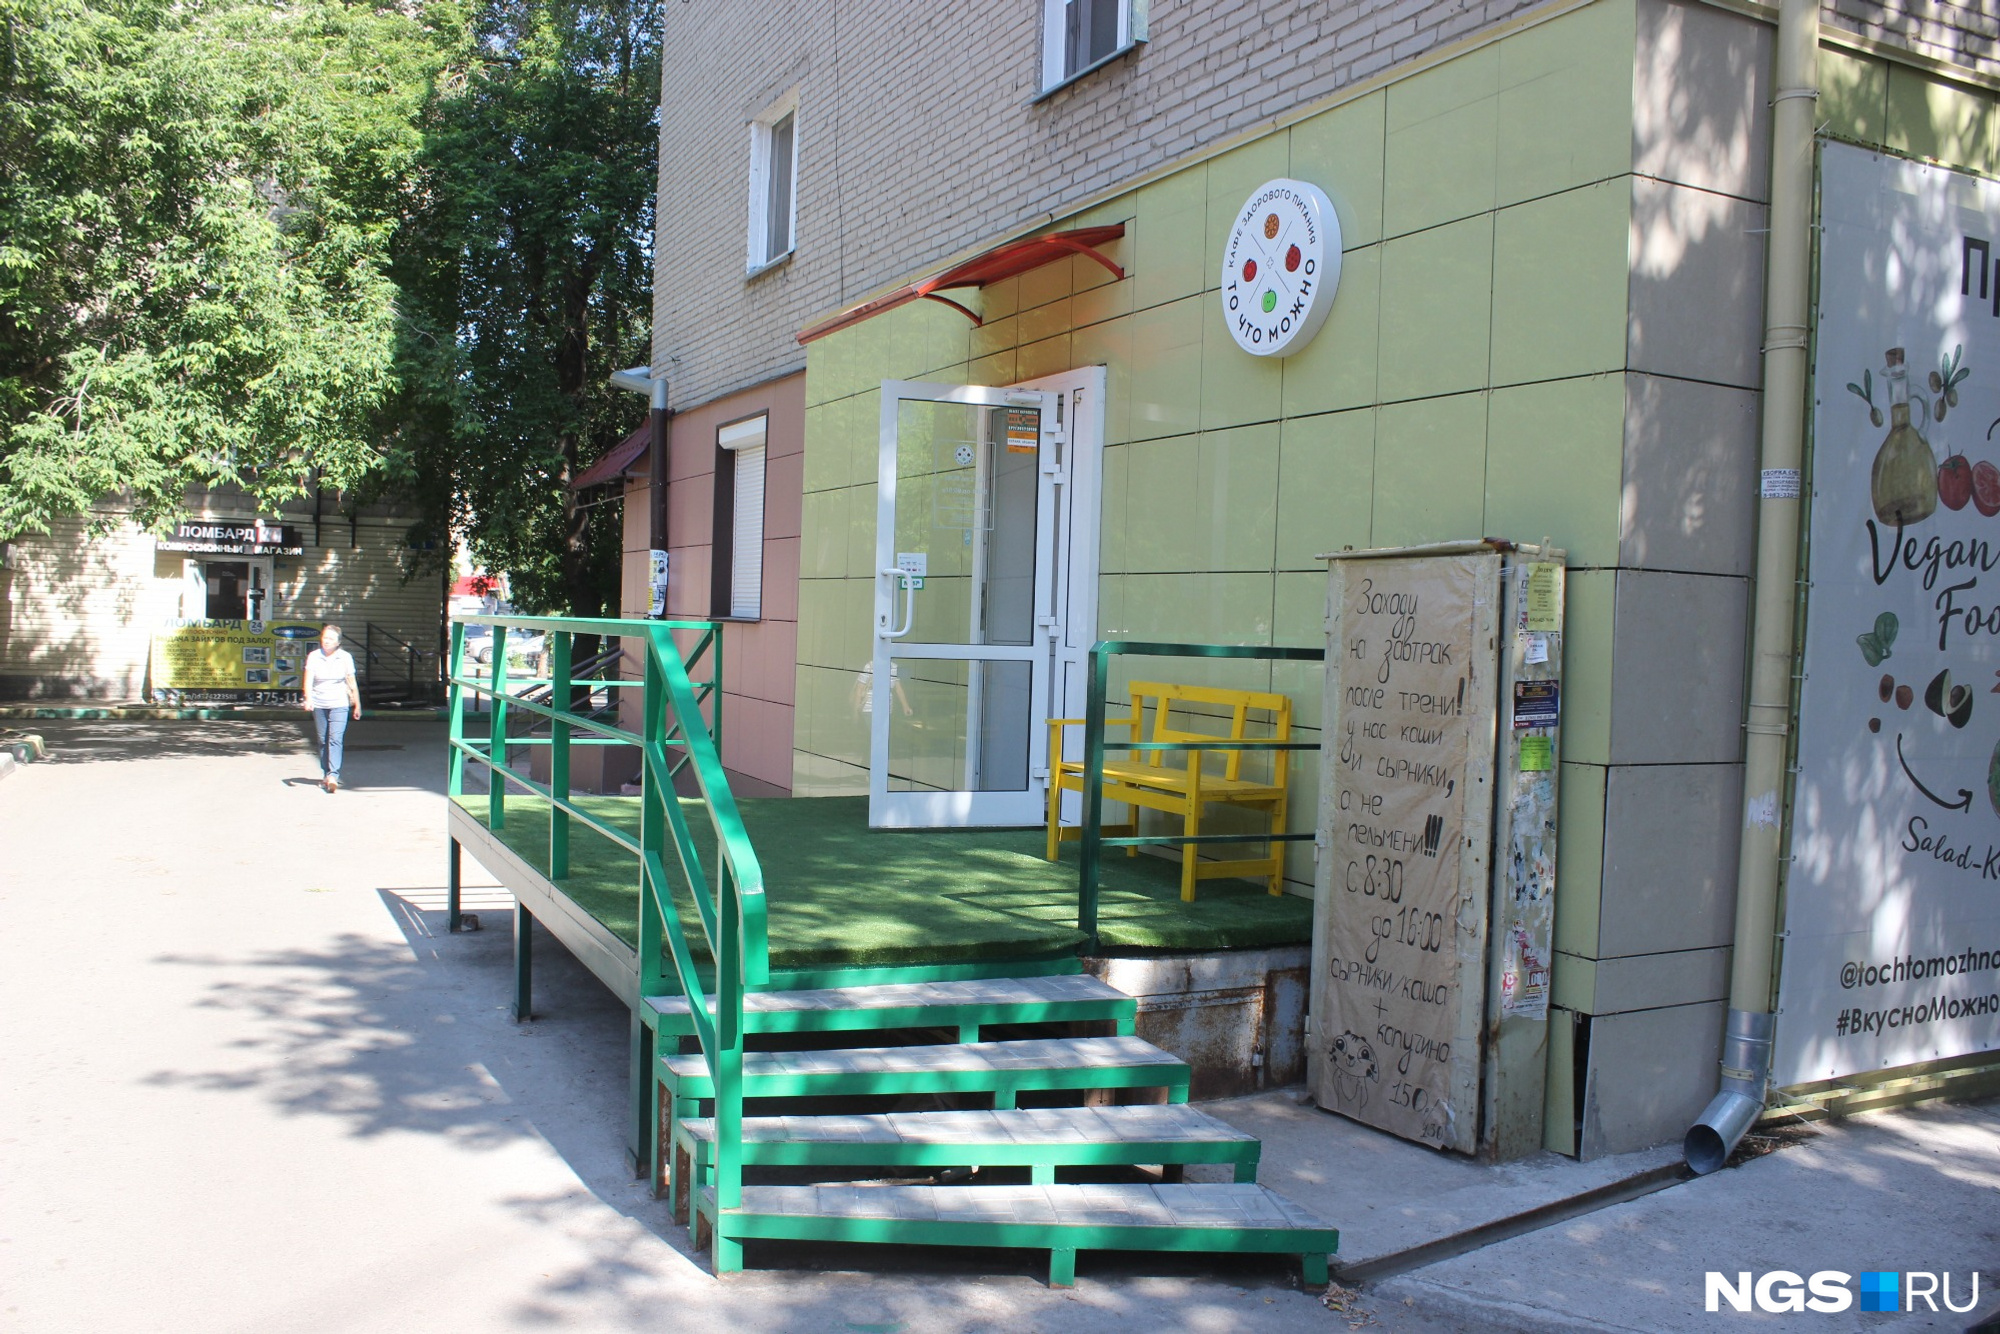 Вход в кафе расположен с торца здания, которое стоит внутри квартала. Фото Стаса Соколова